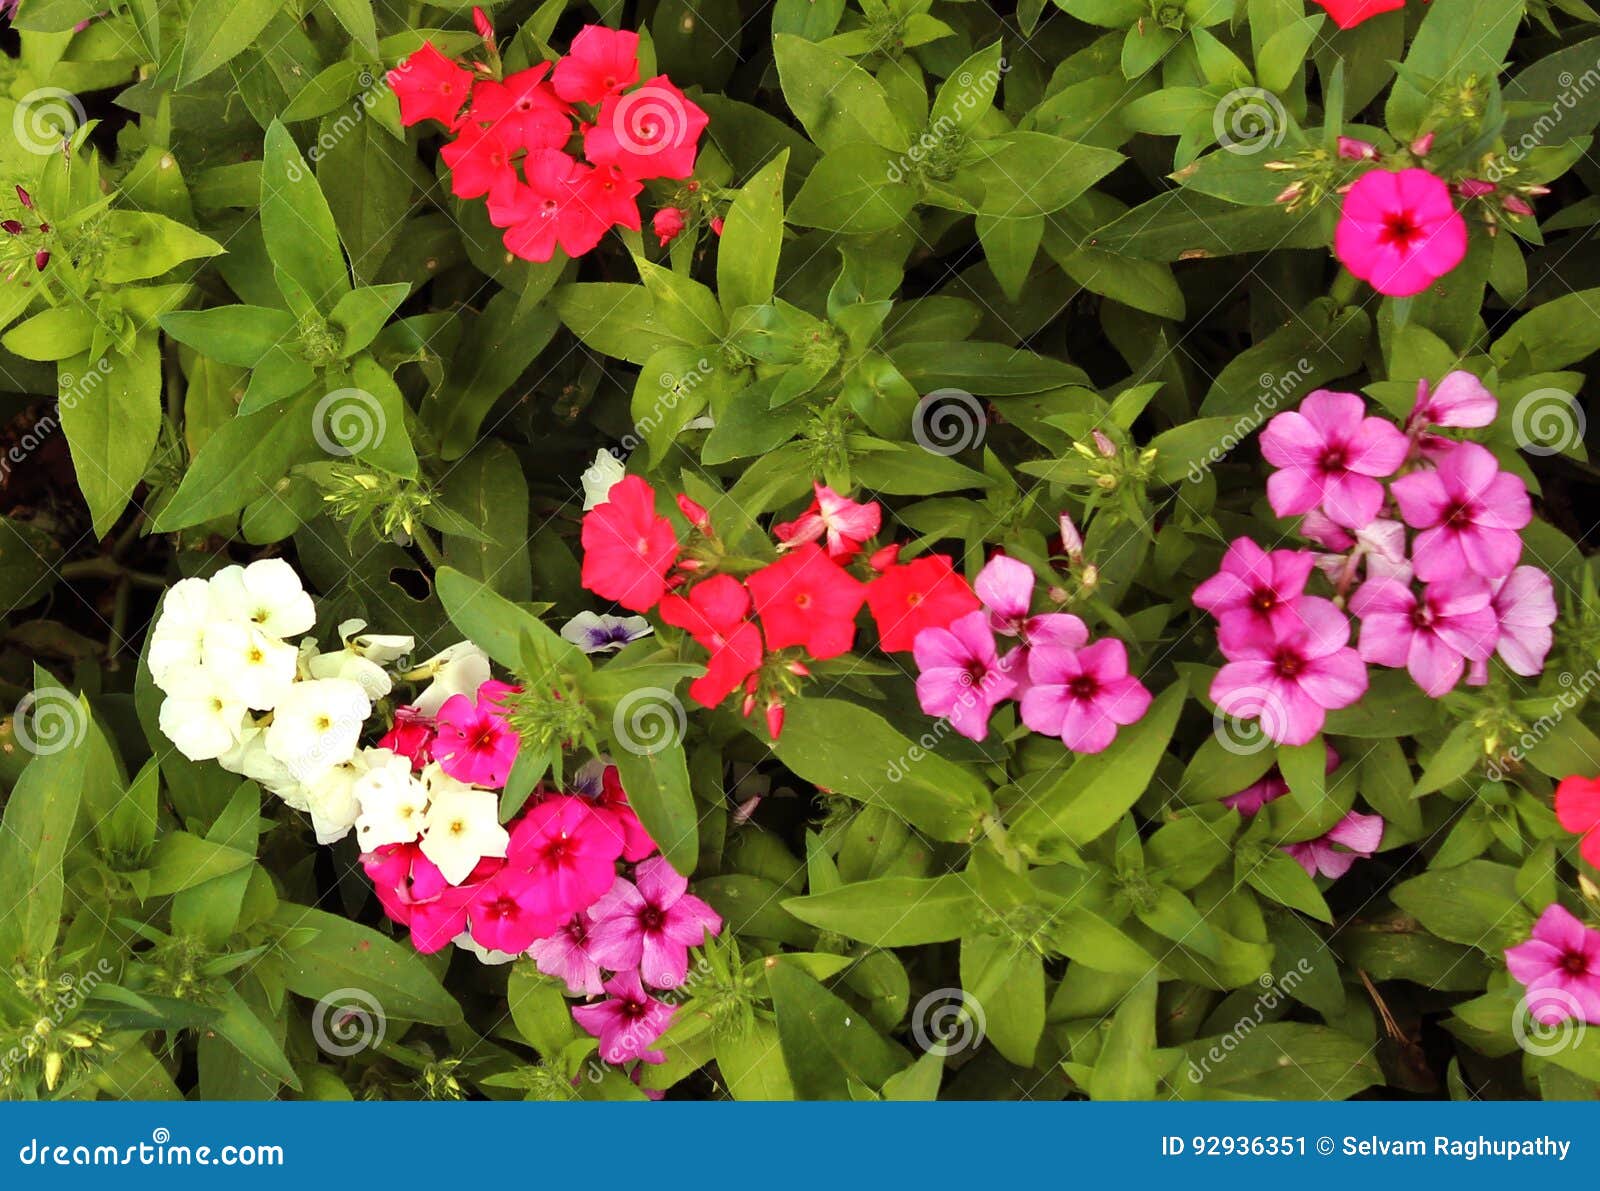 Ornamental flower bed stock image. Image of landscape - 92936351